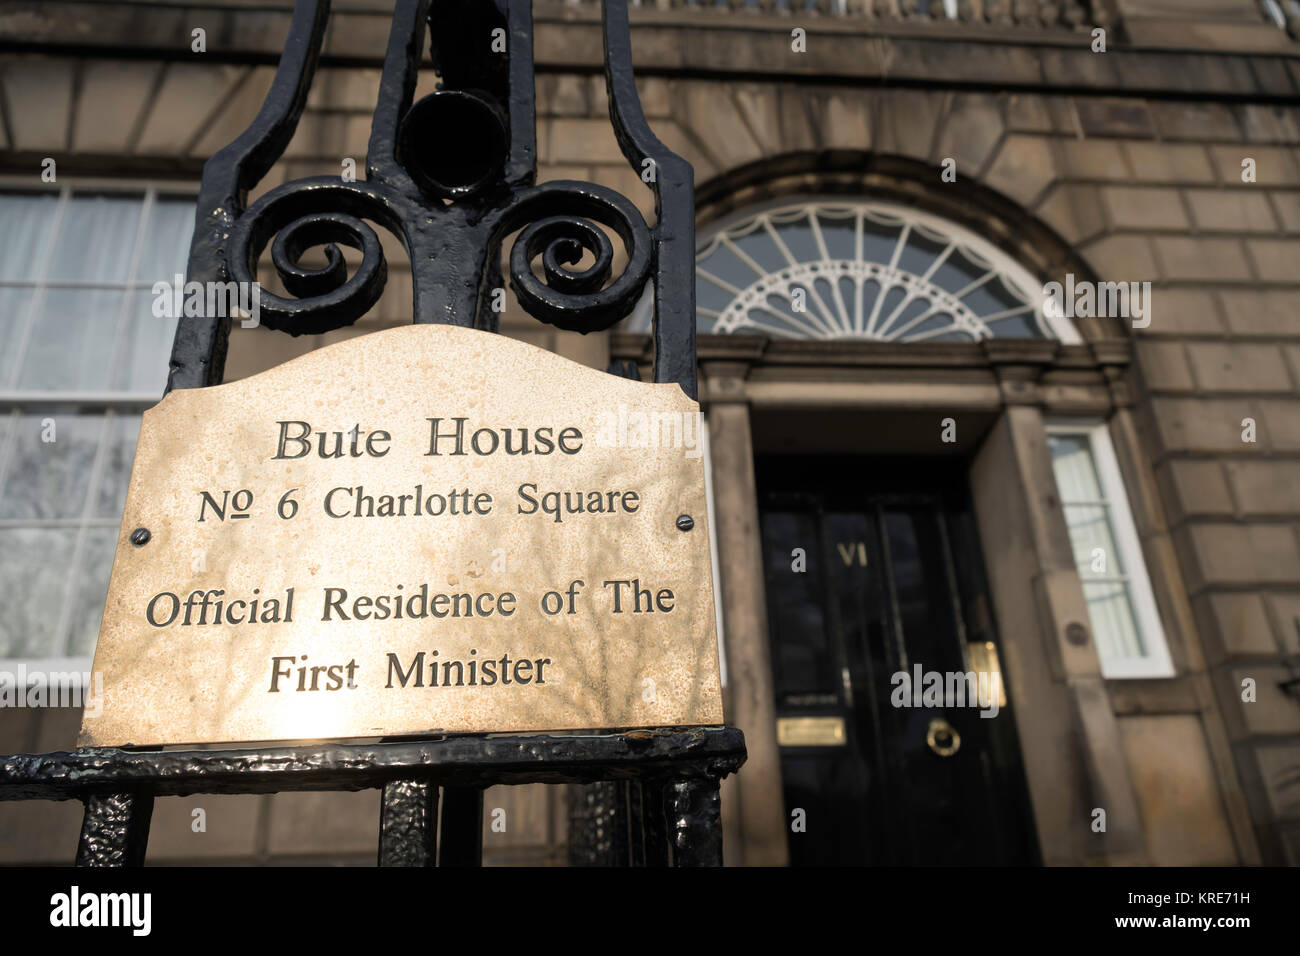 Detail der Typenschild an Bute House, die offizielle Residenz des Ersten Minister von Schottland in Charlotte Square, Edinburgh, Schottland, Vereinigtes Königreich Stockfoto